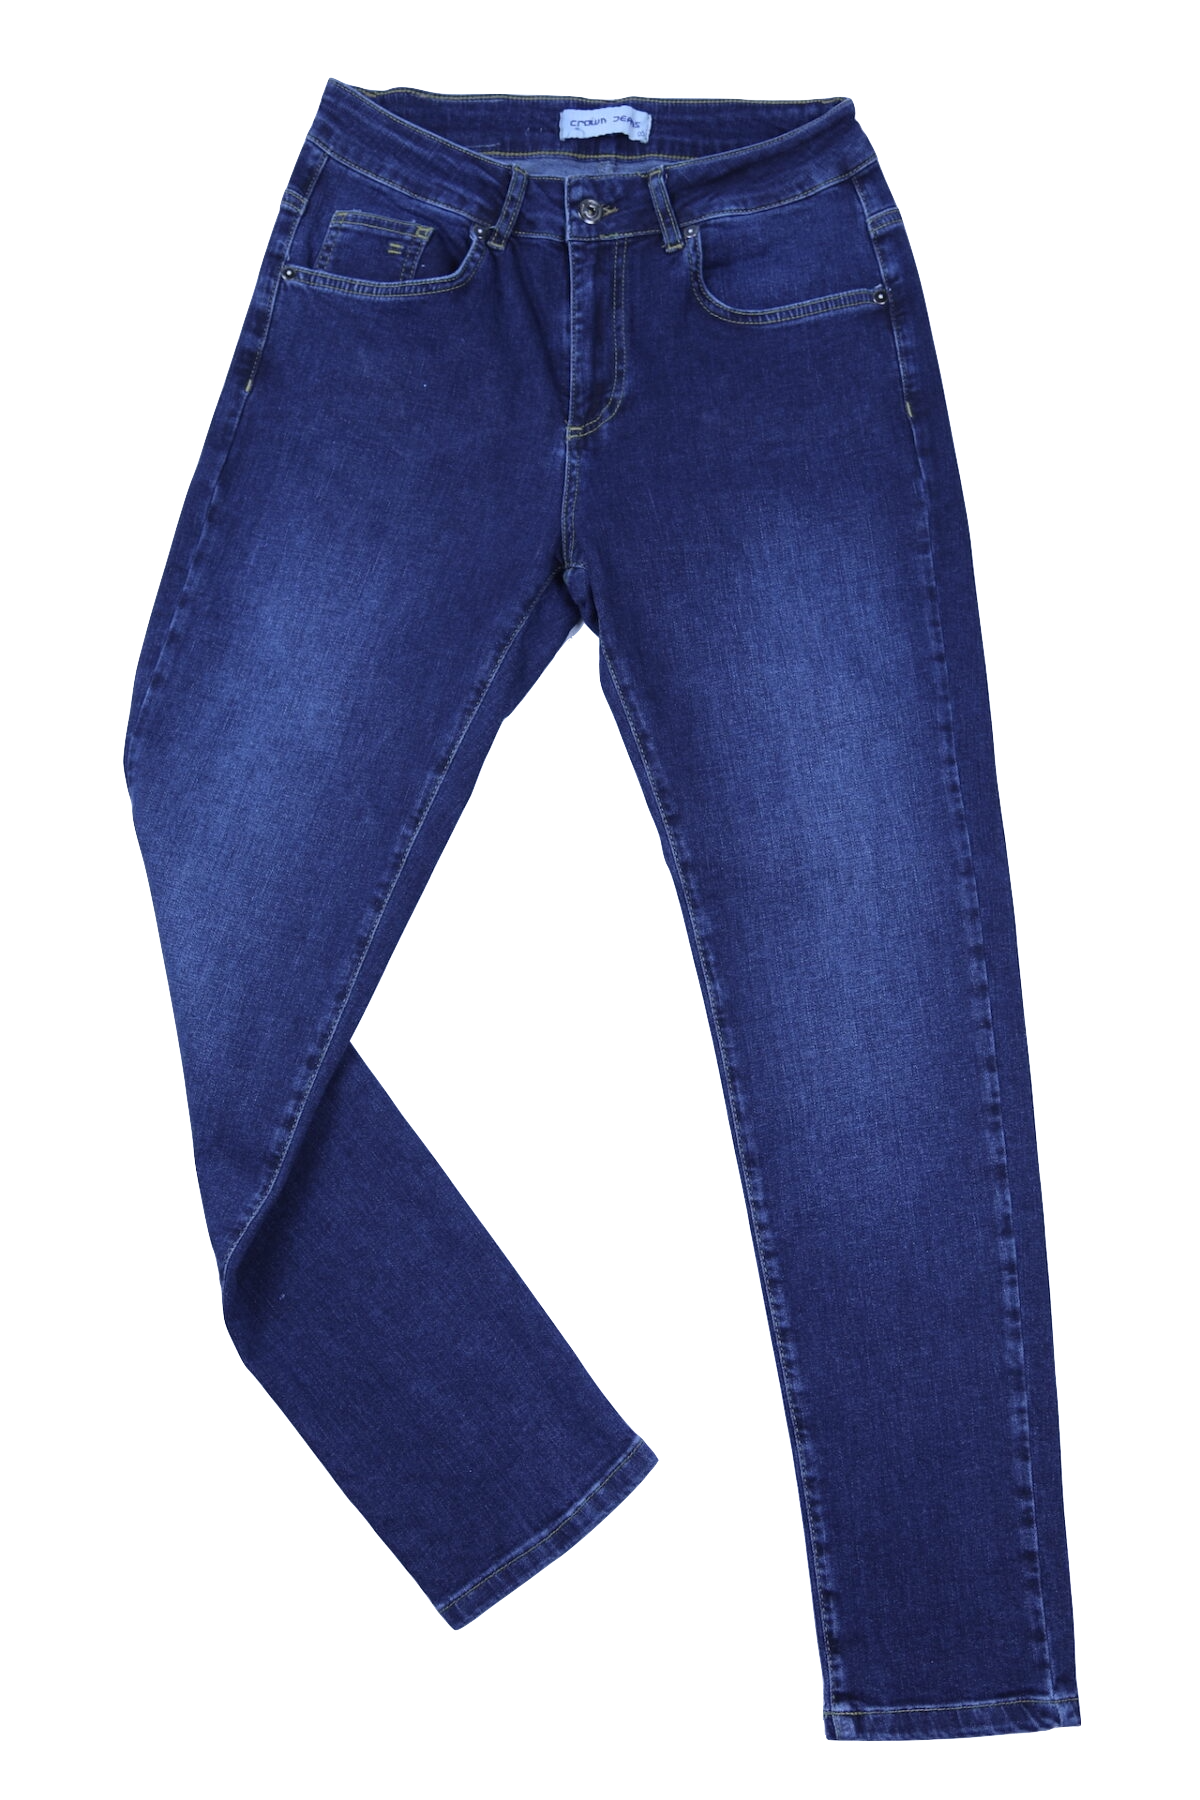 Damskie spodnie jeansowe comfort strecz, ciemnoniebieskie z przetarciami, lekko zwężana nogawka